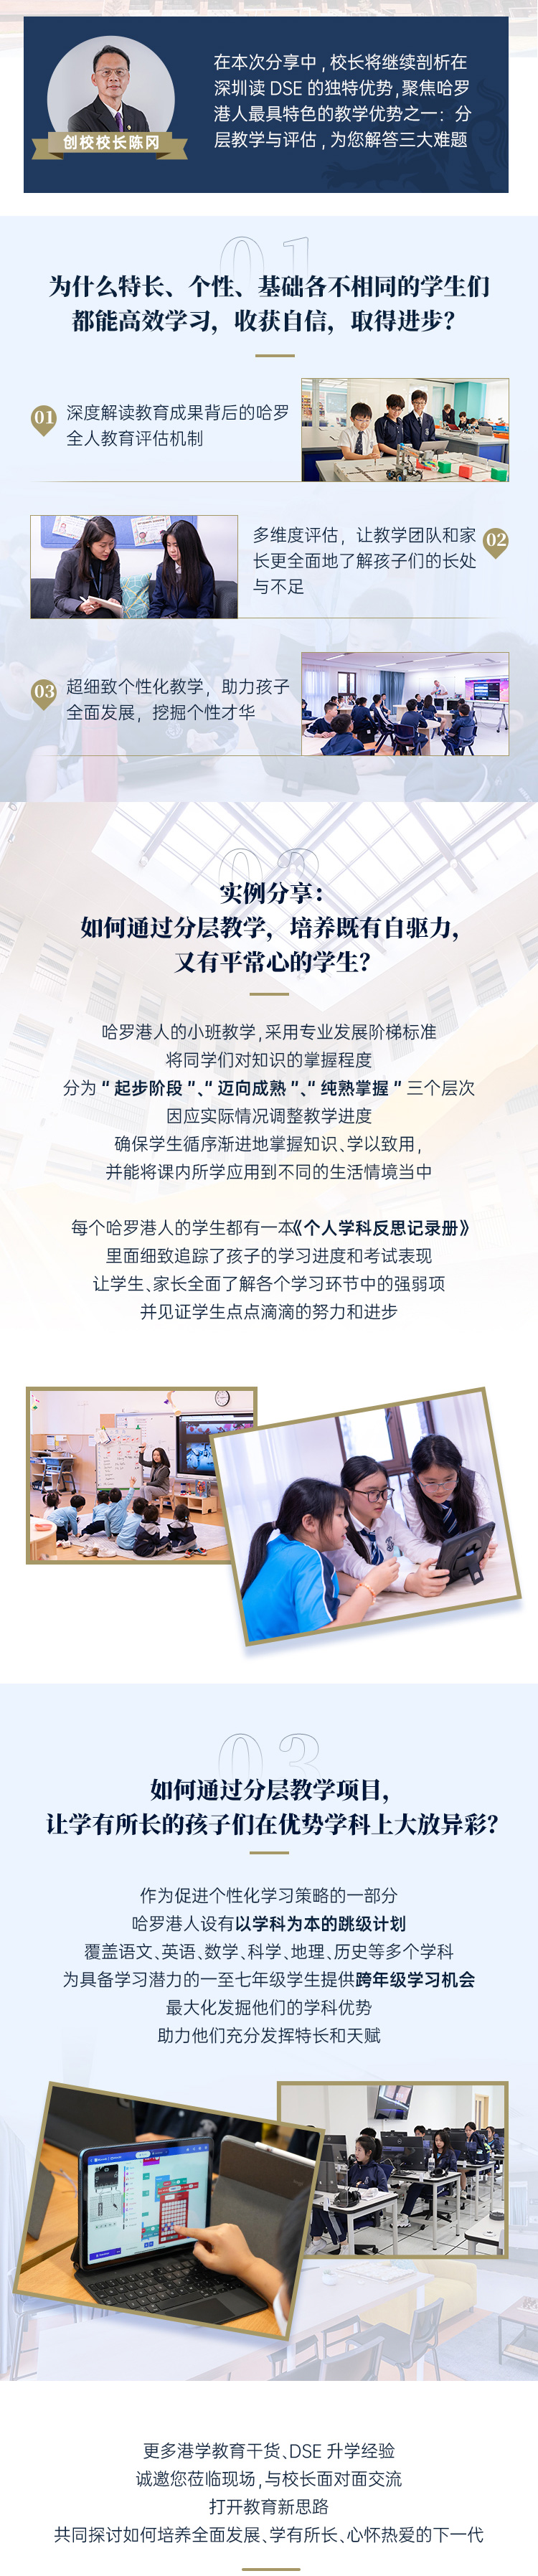 广州佳鲸通信息科技有限公司